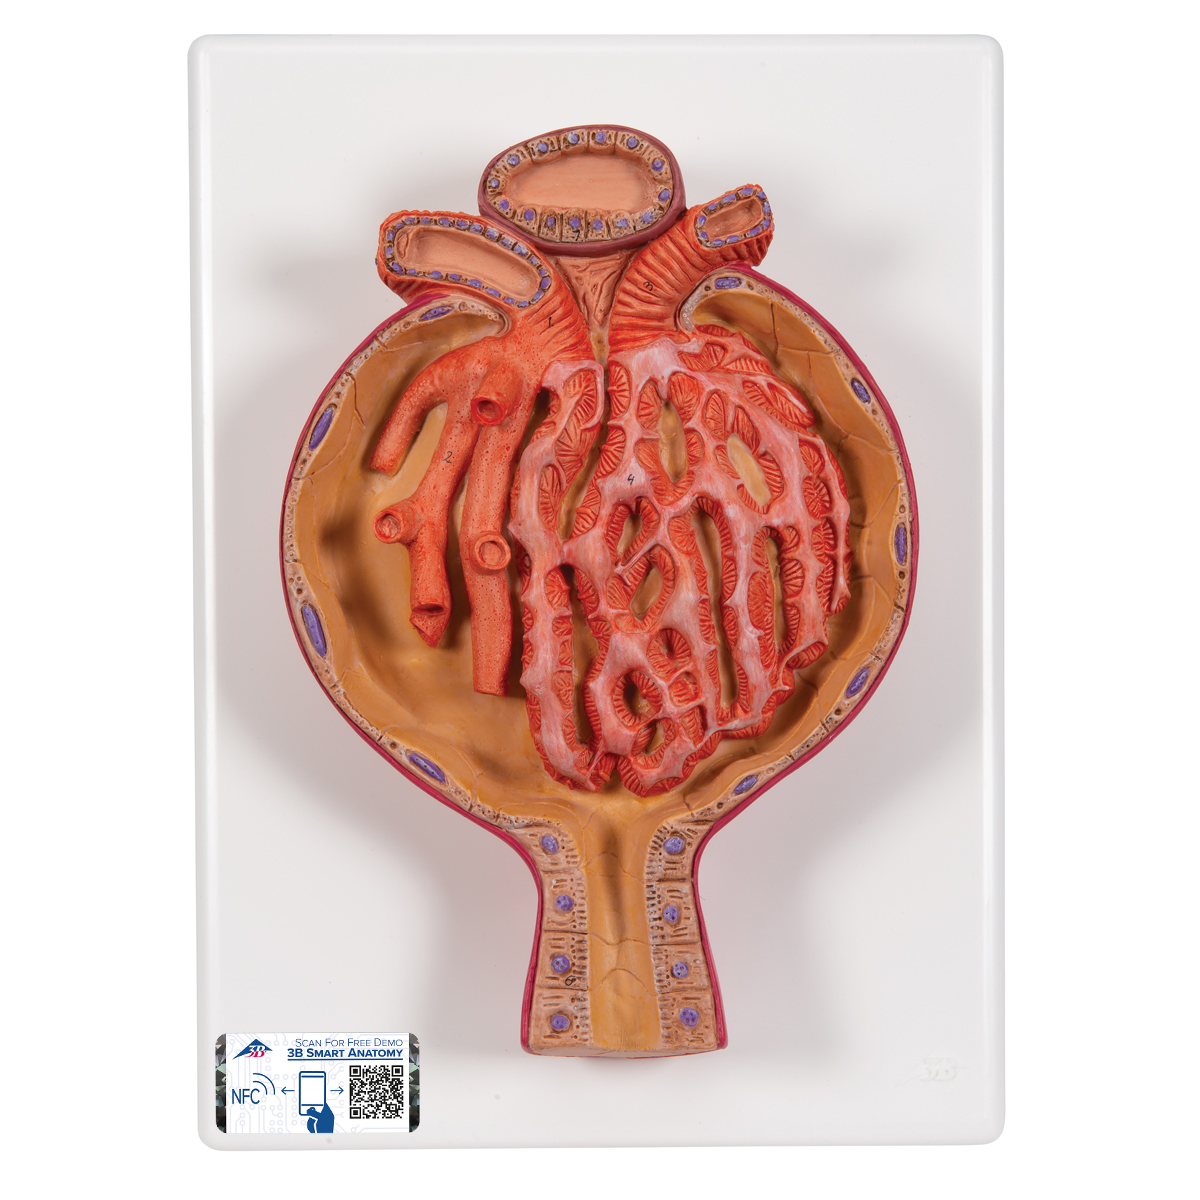 Nierenkörperchen Modell, 700-fache Größe - 3B Smart Anatomy, Bestellnummer 1000298, K10/2, 3B Scientific